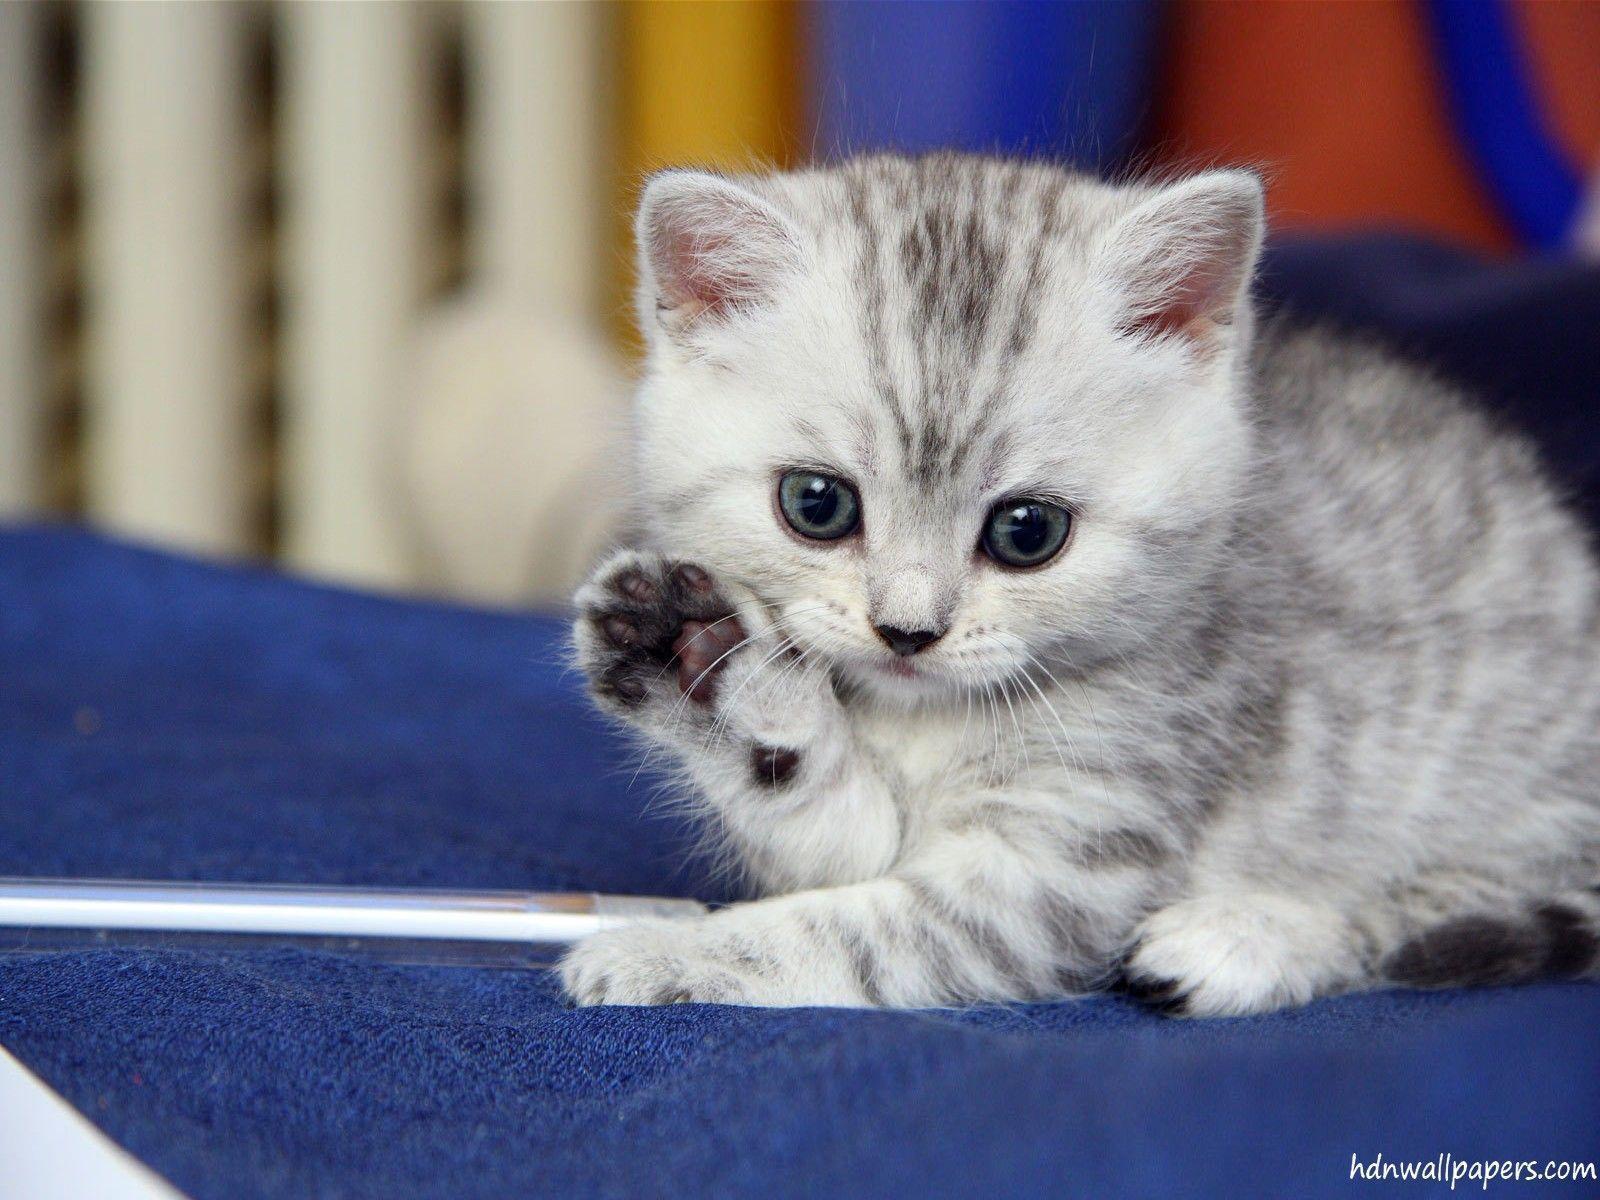 Cute Kitten Image